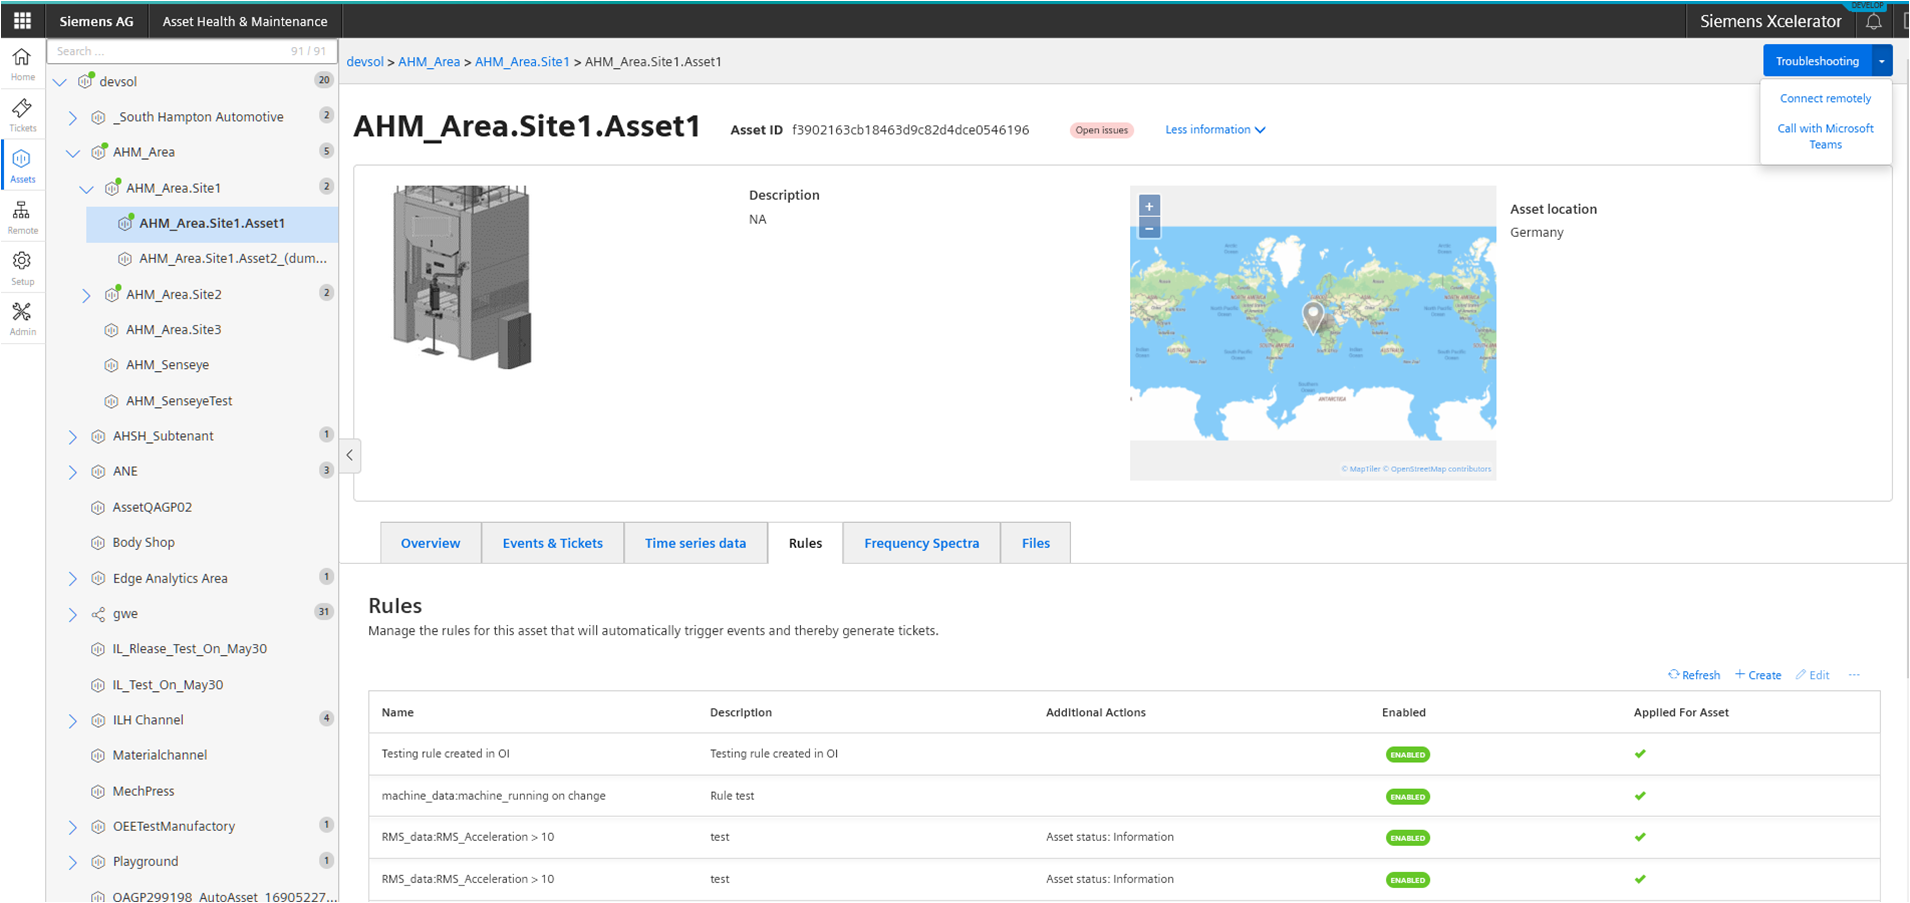 zrzut ekranu z aplikacji asset health & maintenance przedstawiający reguły ustalone dla monitorowanej maszyny